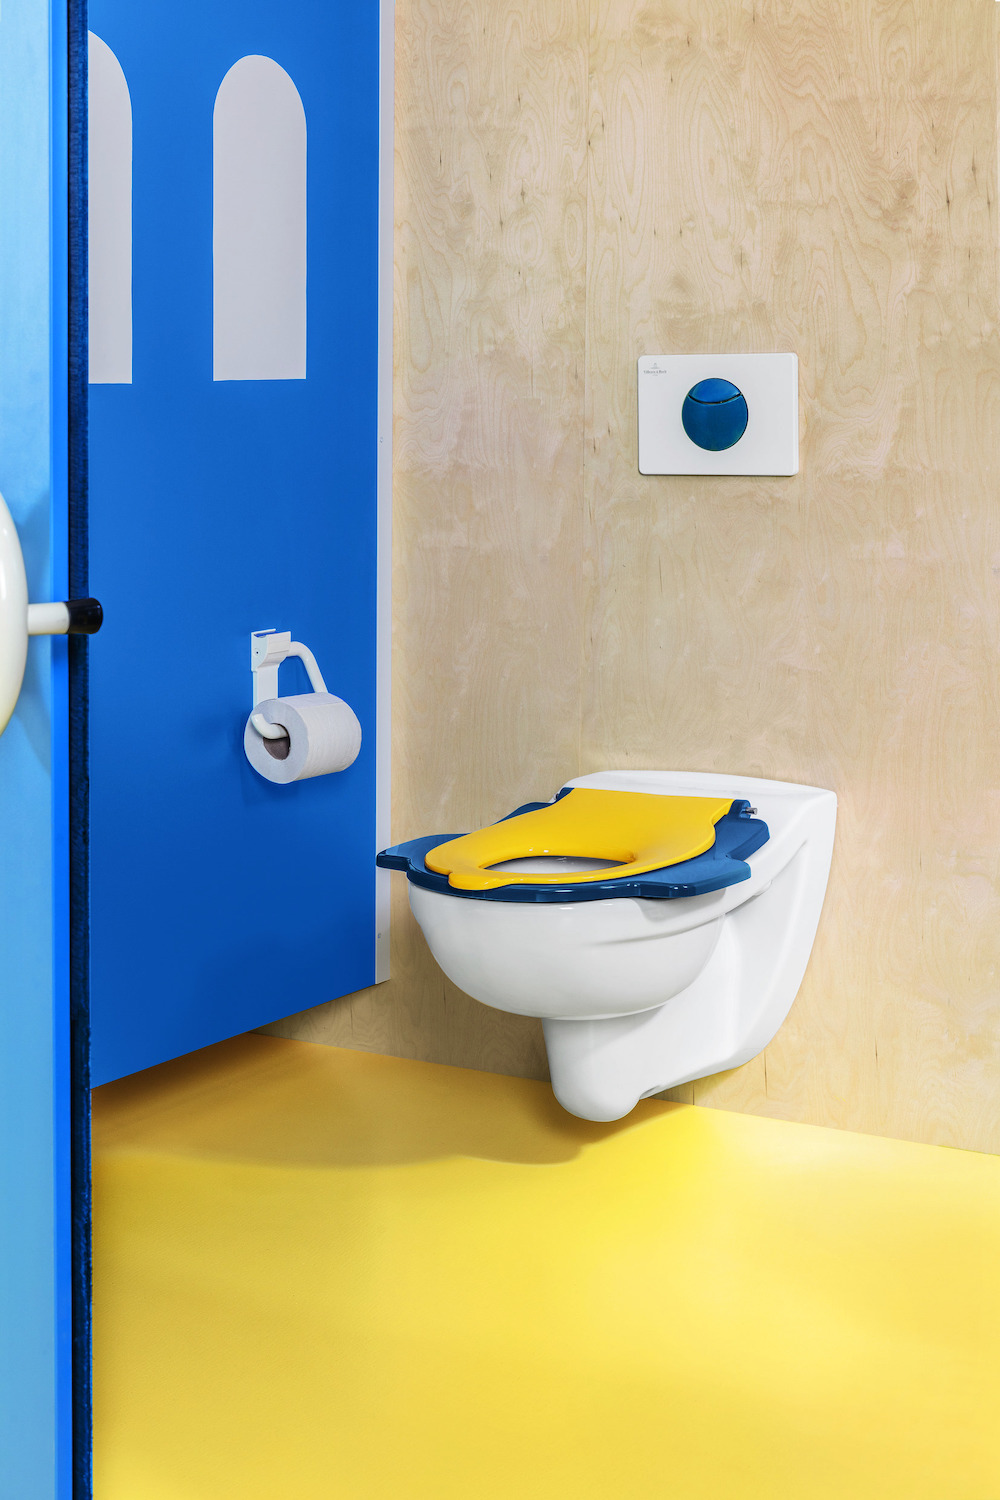 Badkamer met sanitair speciaal voor kinderen van Villeroy & Boch. O.novo innovatieve en kindervriendelijke sanitair-collectie #villeroyboch #onovo #kinderen #badkamer #toilet #kindertoilet #kinderbadkamer #badkamerinspiratie #kleur